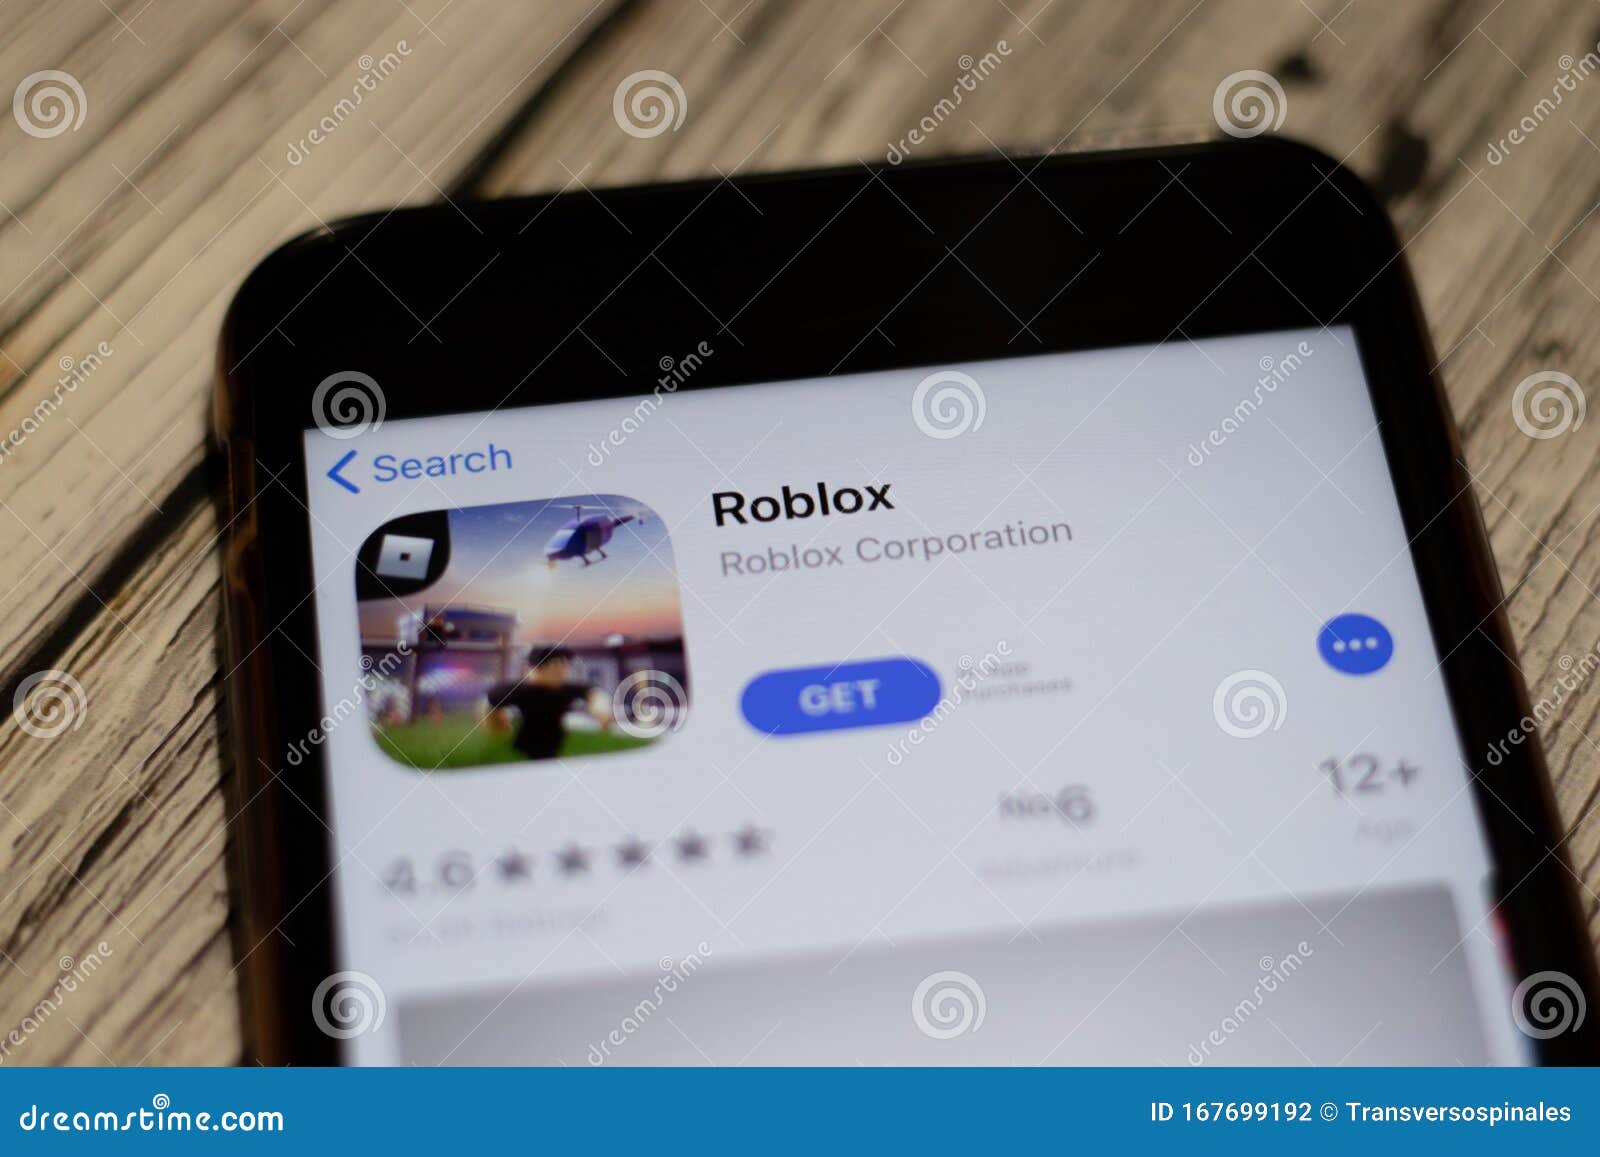 Roblox App Icon